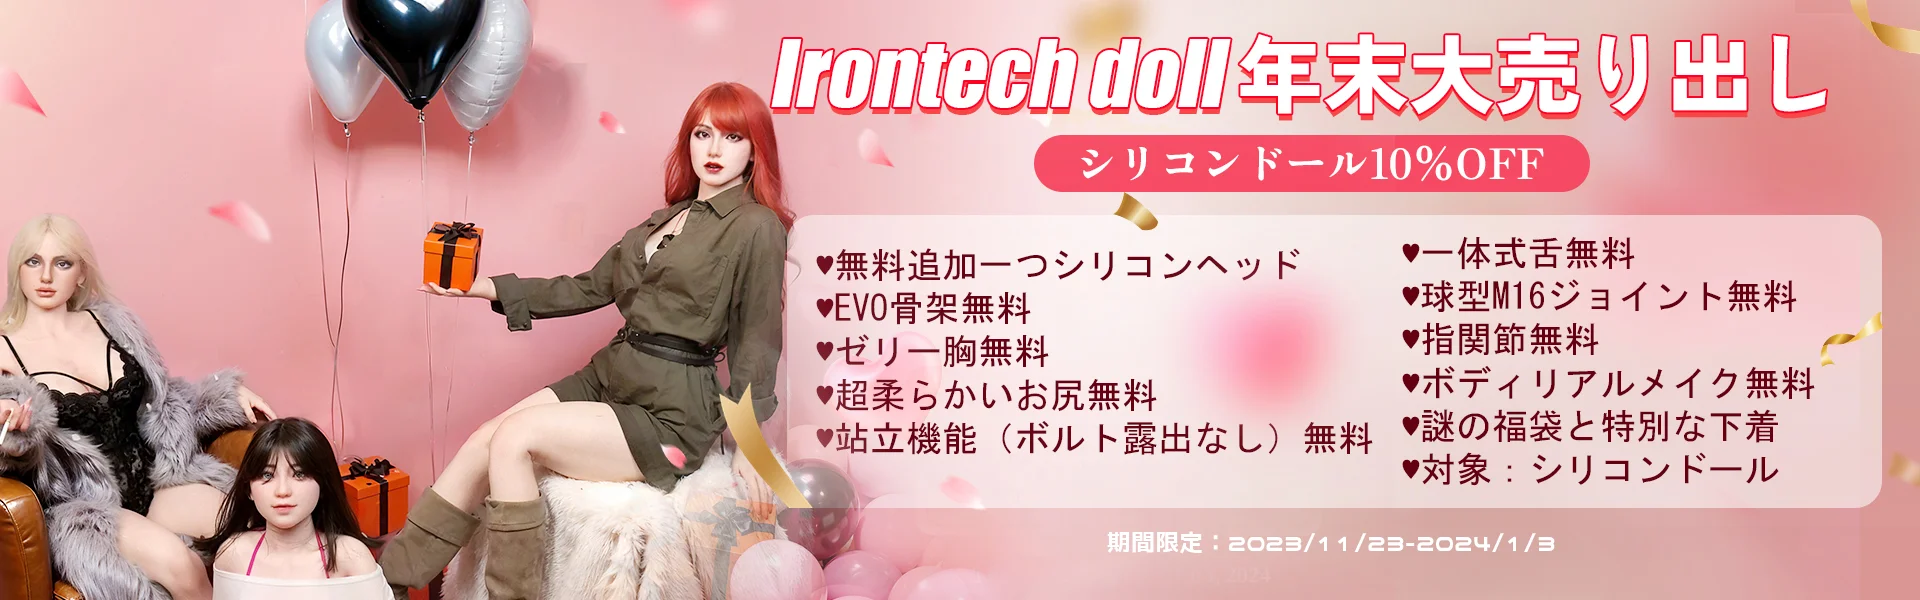 IrontechDoll 12月キャンペーン